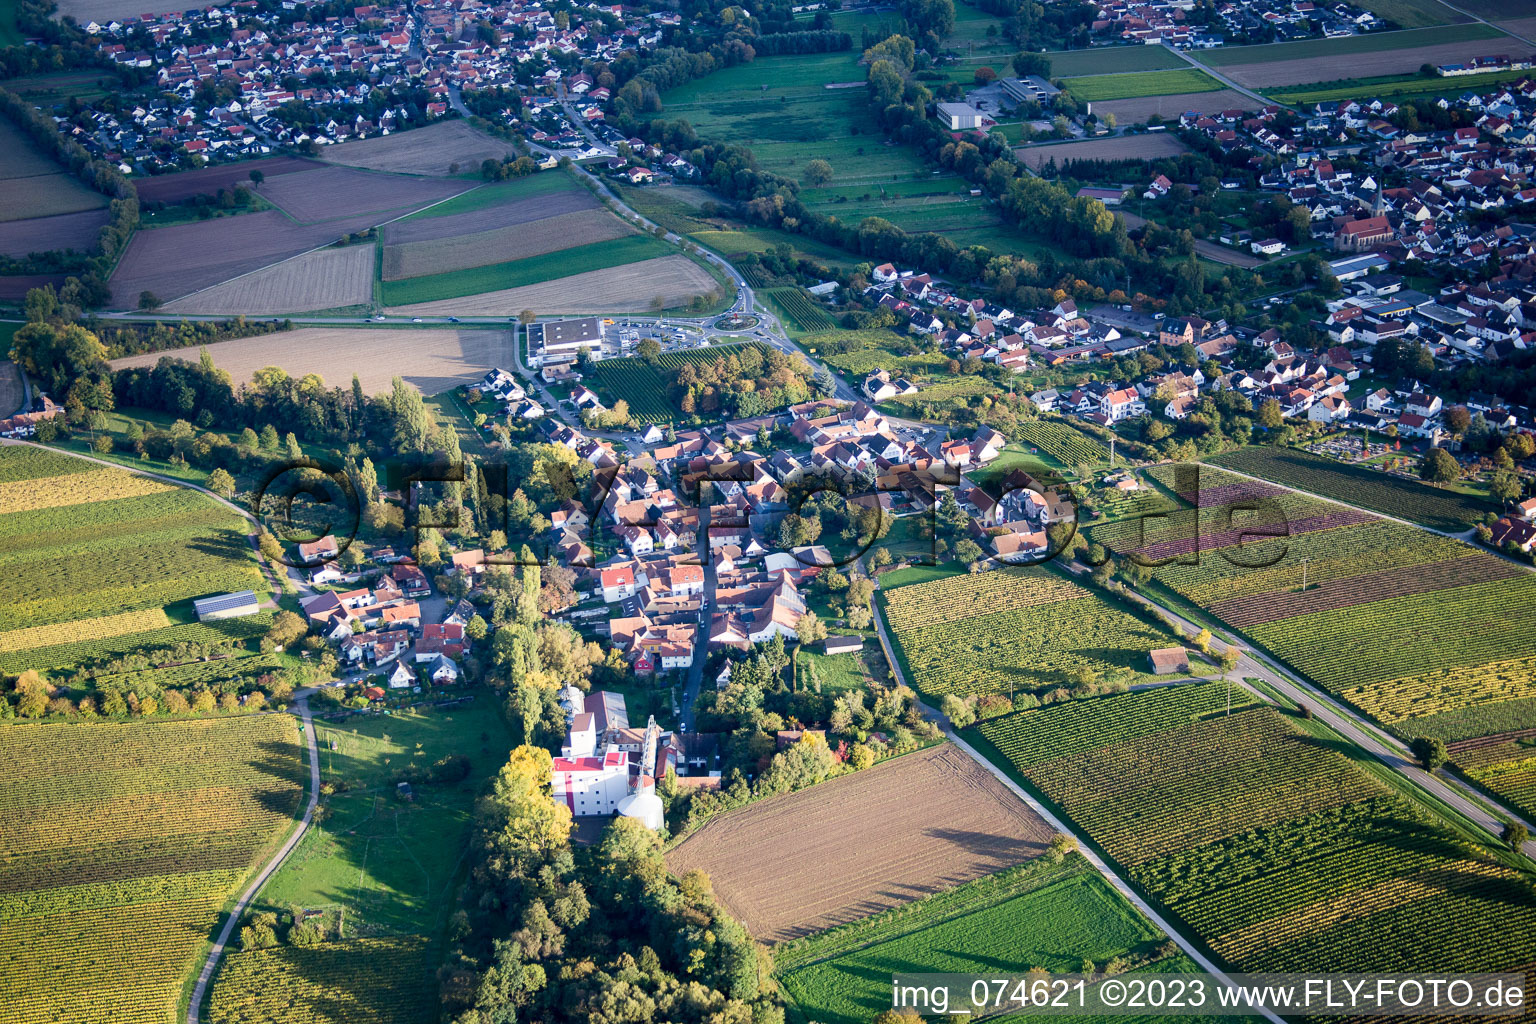 Quartier Appenhofen in Billigheim-Ingenheim dans le département Rhénanie-Palatinat, Allemagne depuis l'avion